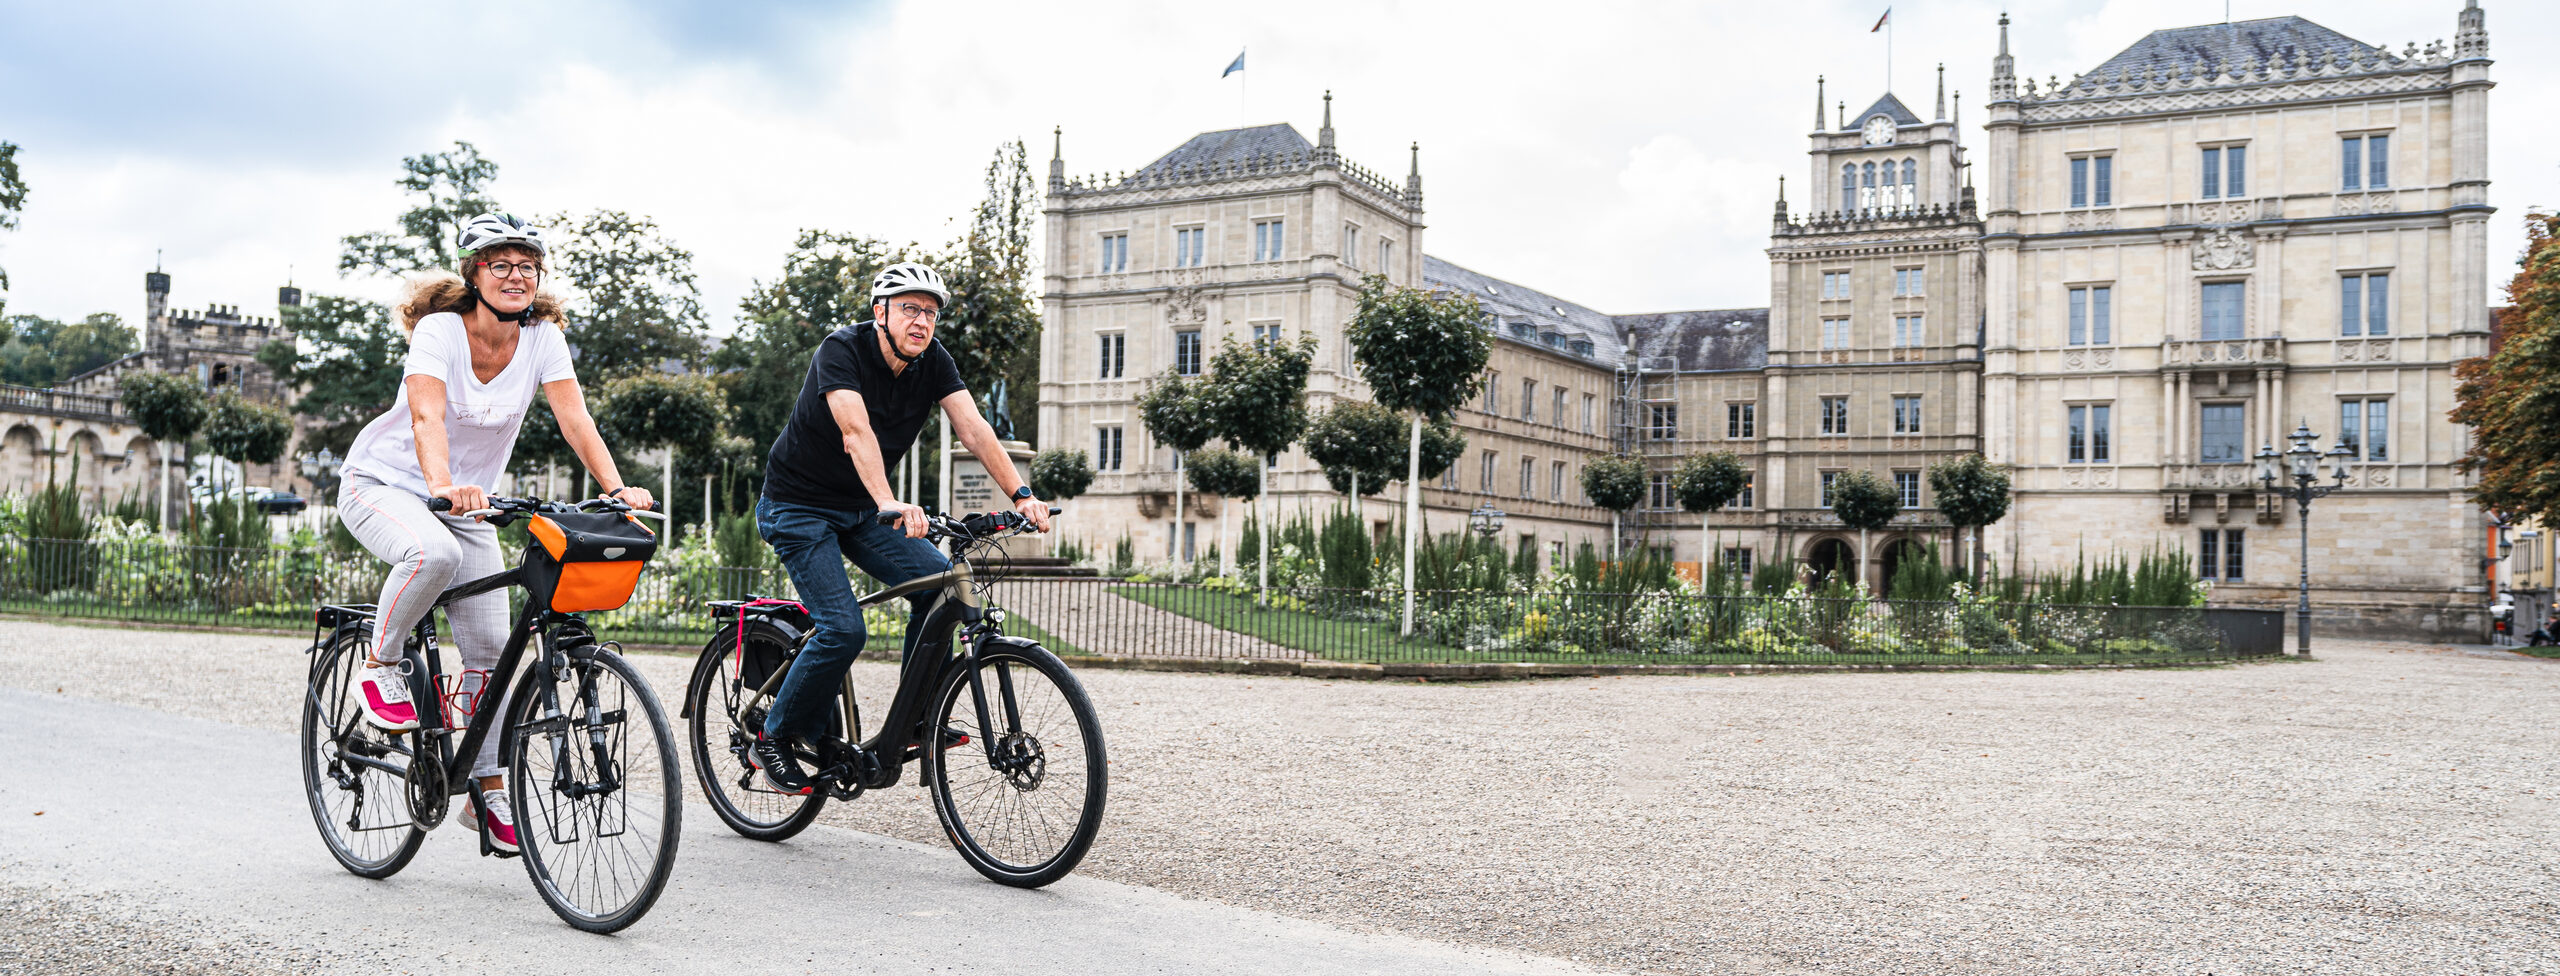 Fahrradfahrer auf dem Coburger Schlossplatz